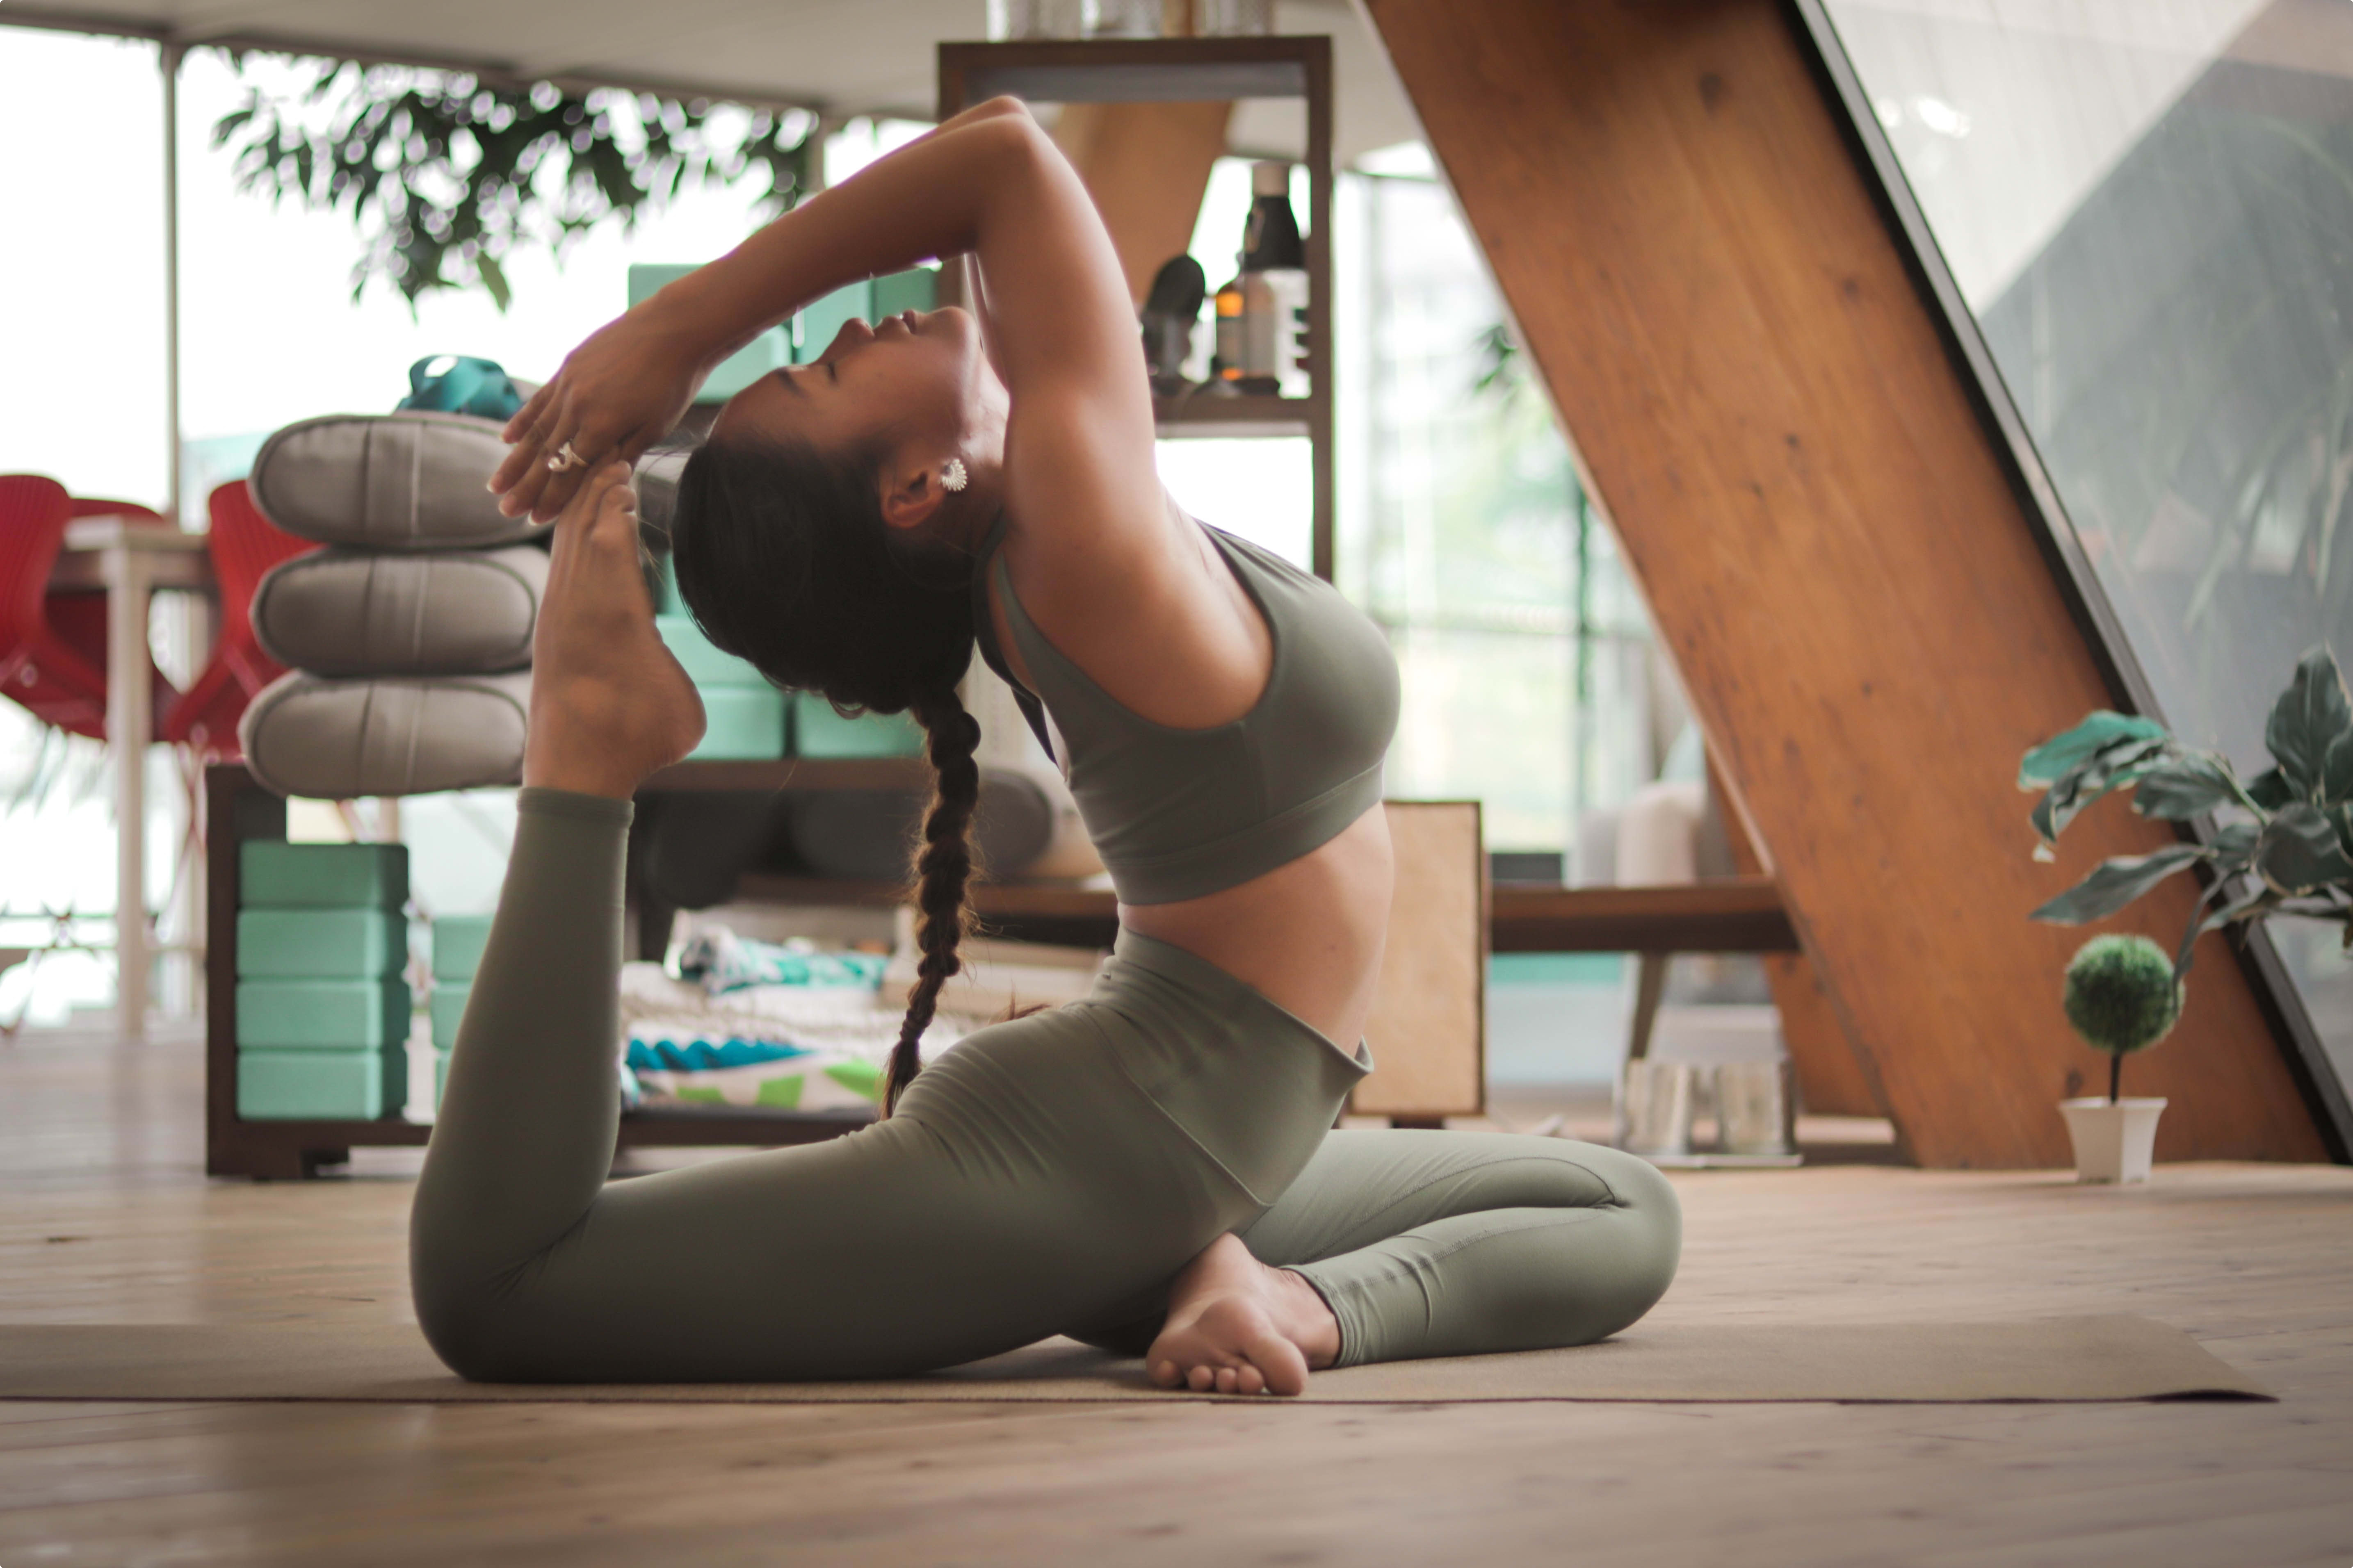 Hatha Yoga For Beginners, Yoga for Flexibility, Yoga For Beginners, Yoga  At Home